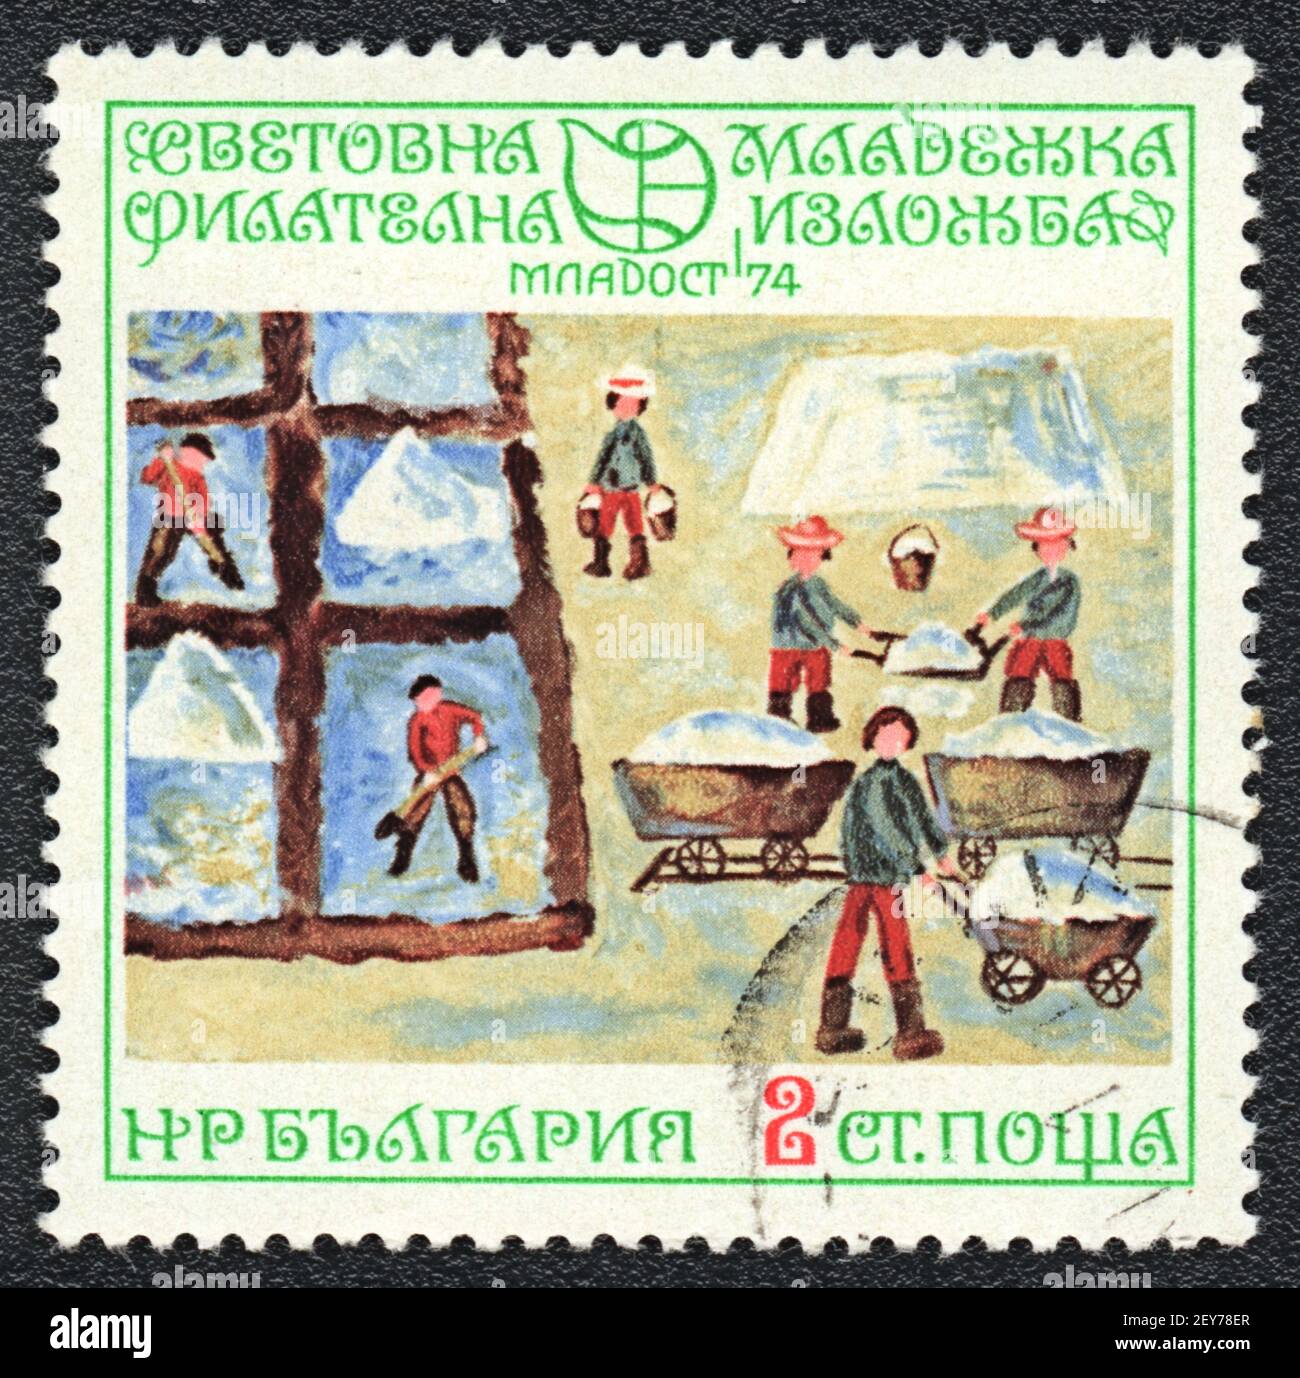 Timbre-poste. Exposition internationale de la jeunesse philatélique 'Jeunesse 74'. Photo peinte par un enfant, Bulgarie, vers 1974 Banque D'Images